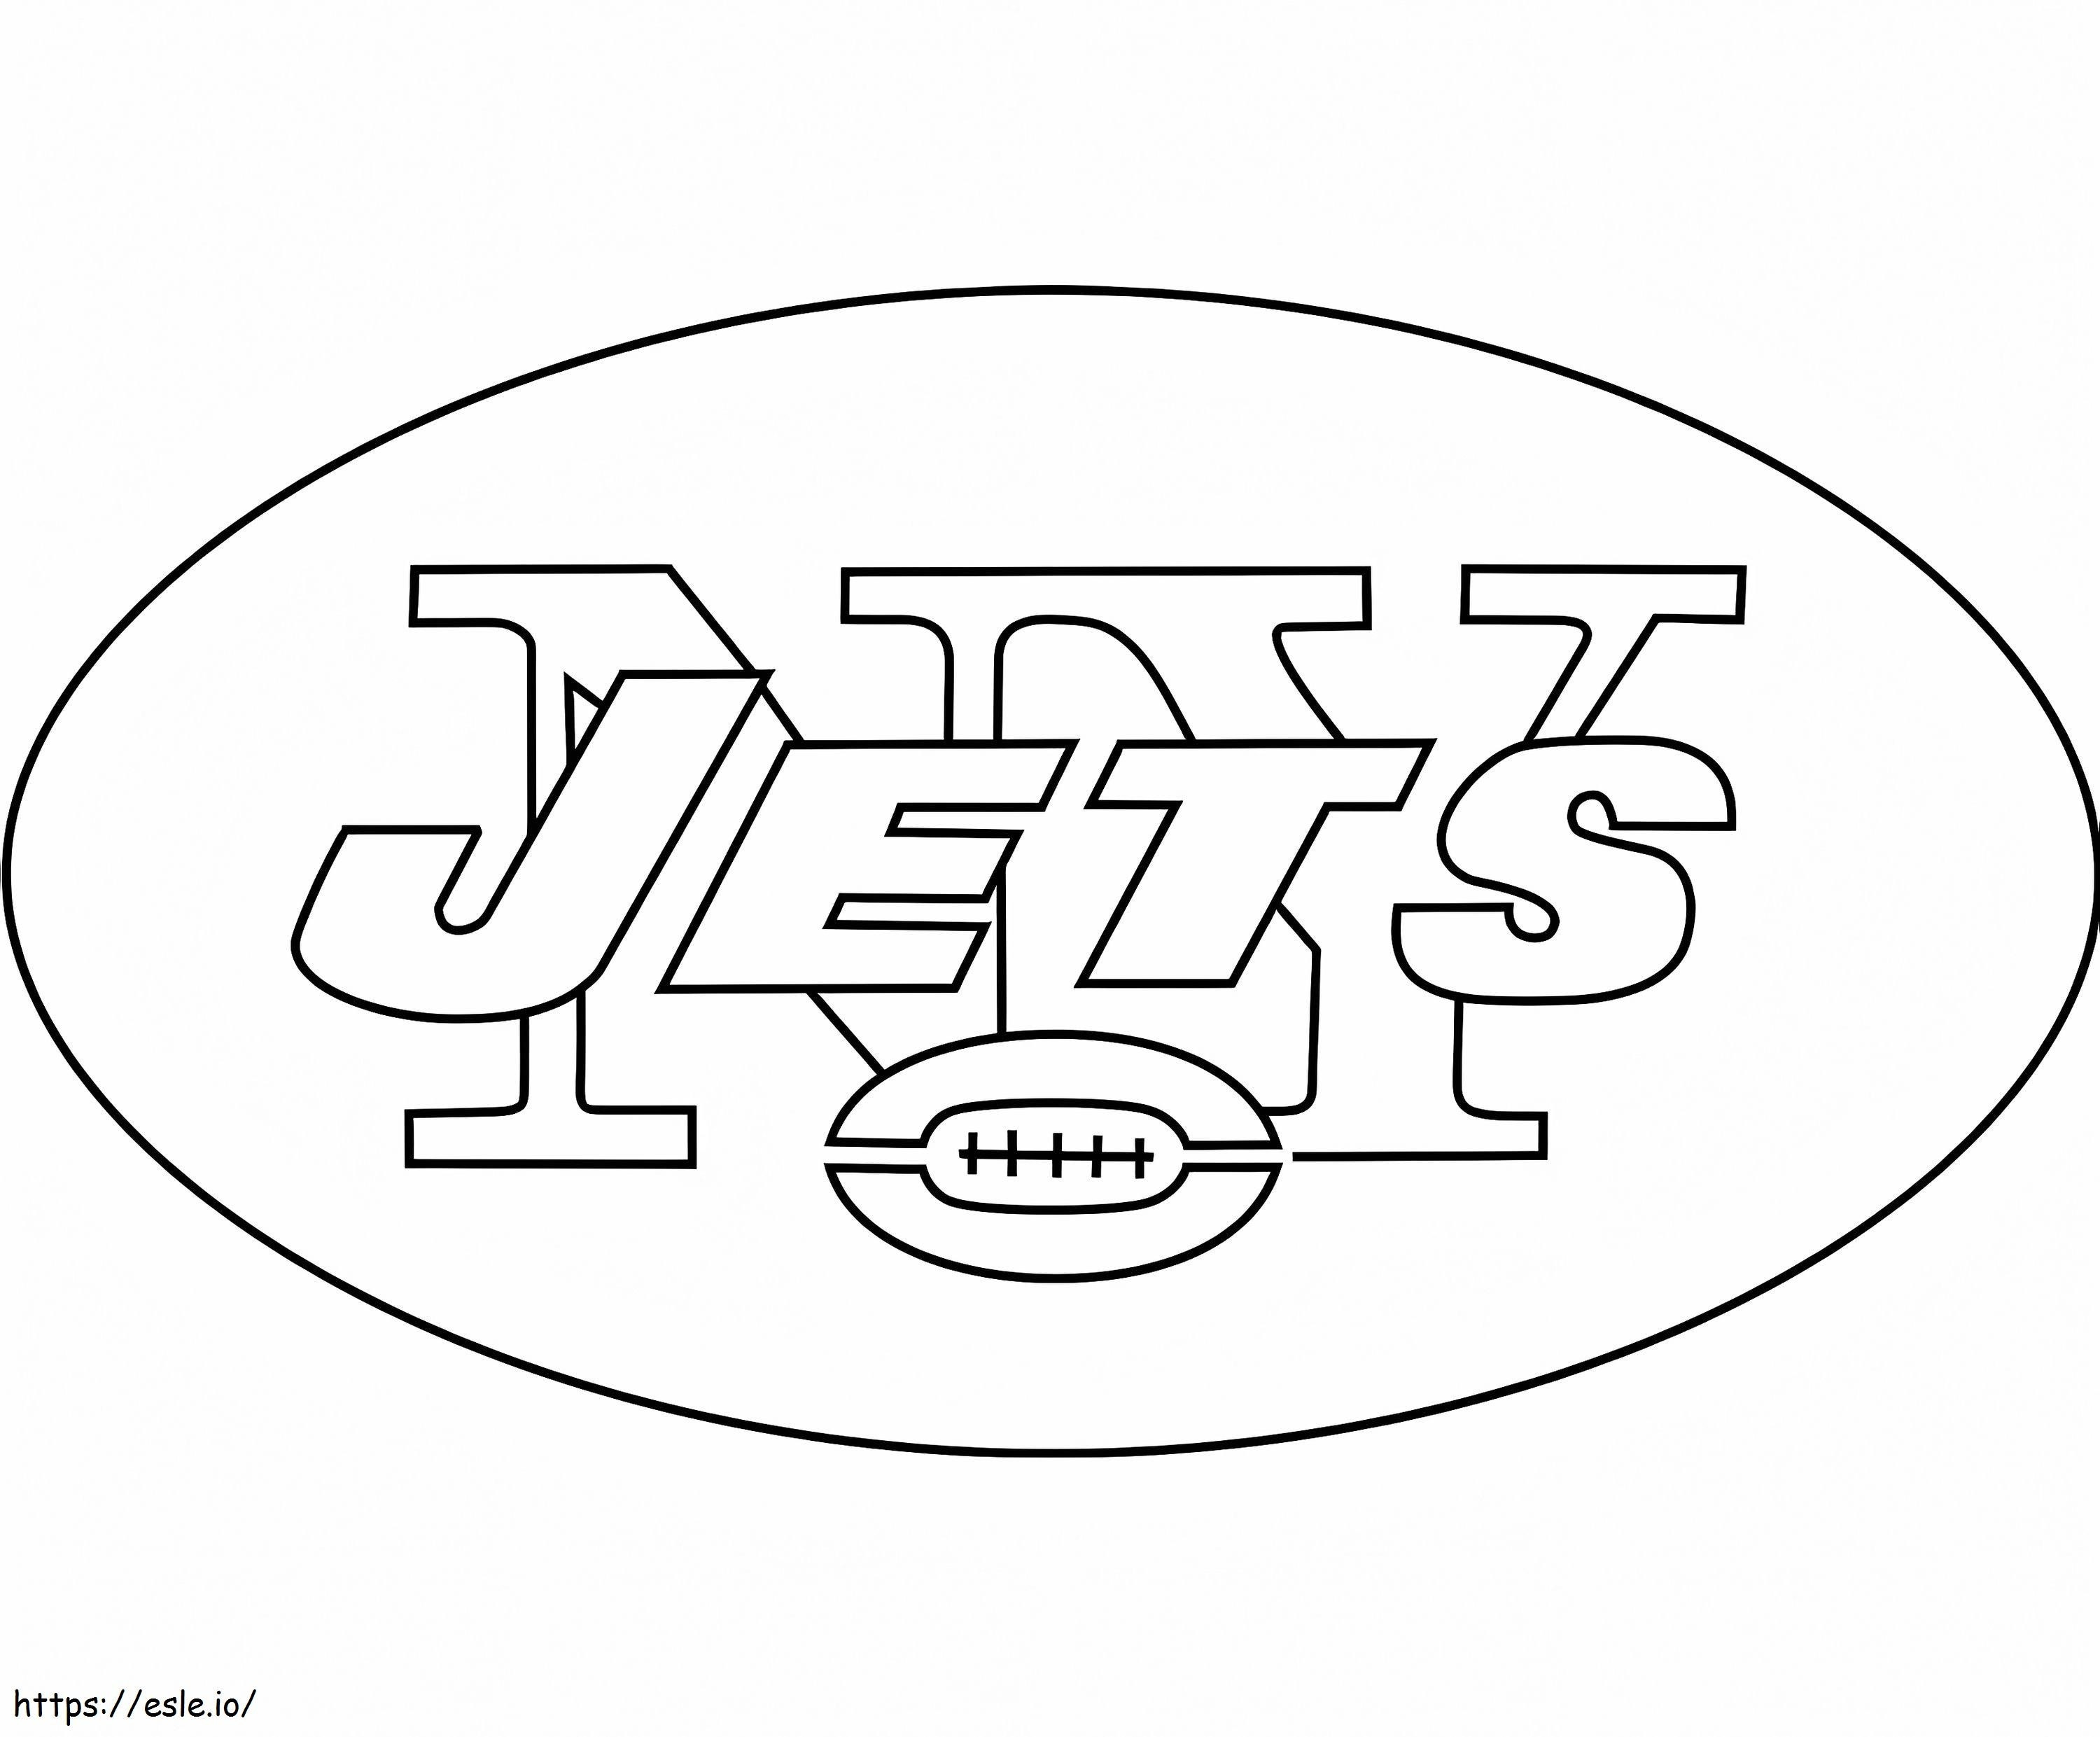 New York Jets-logo kleurplaat kleurplaat